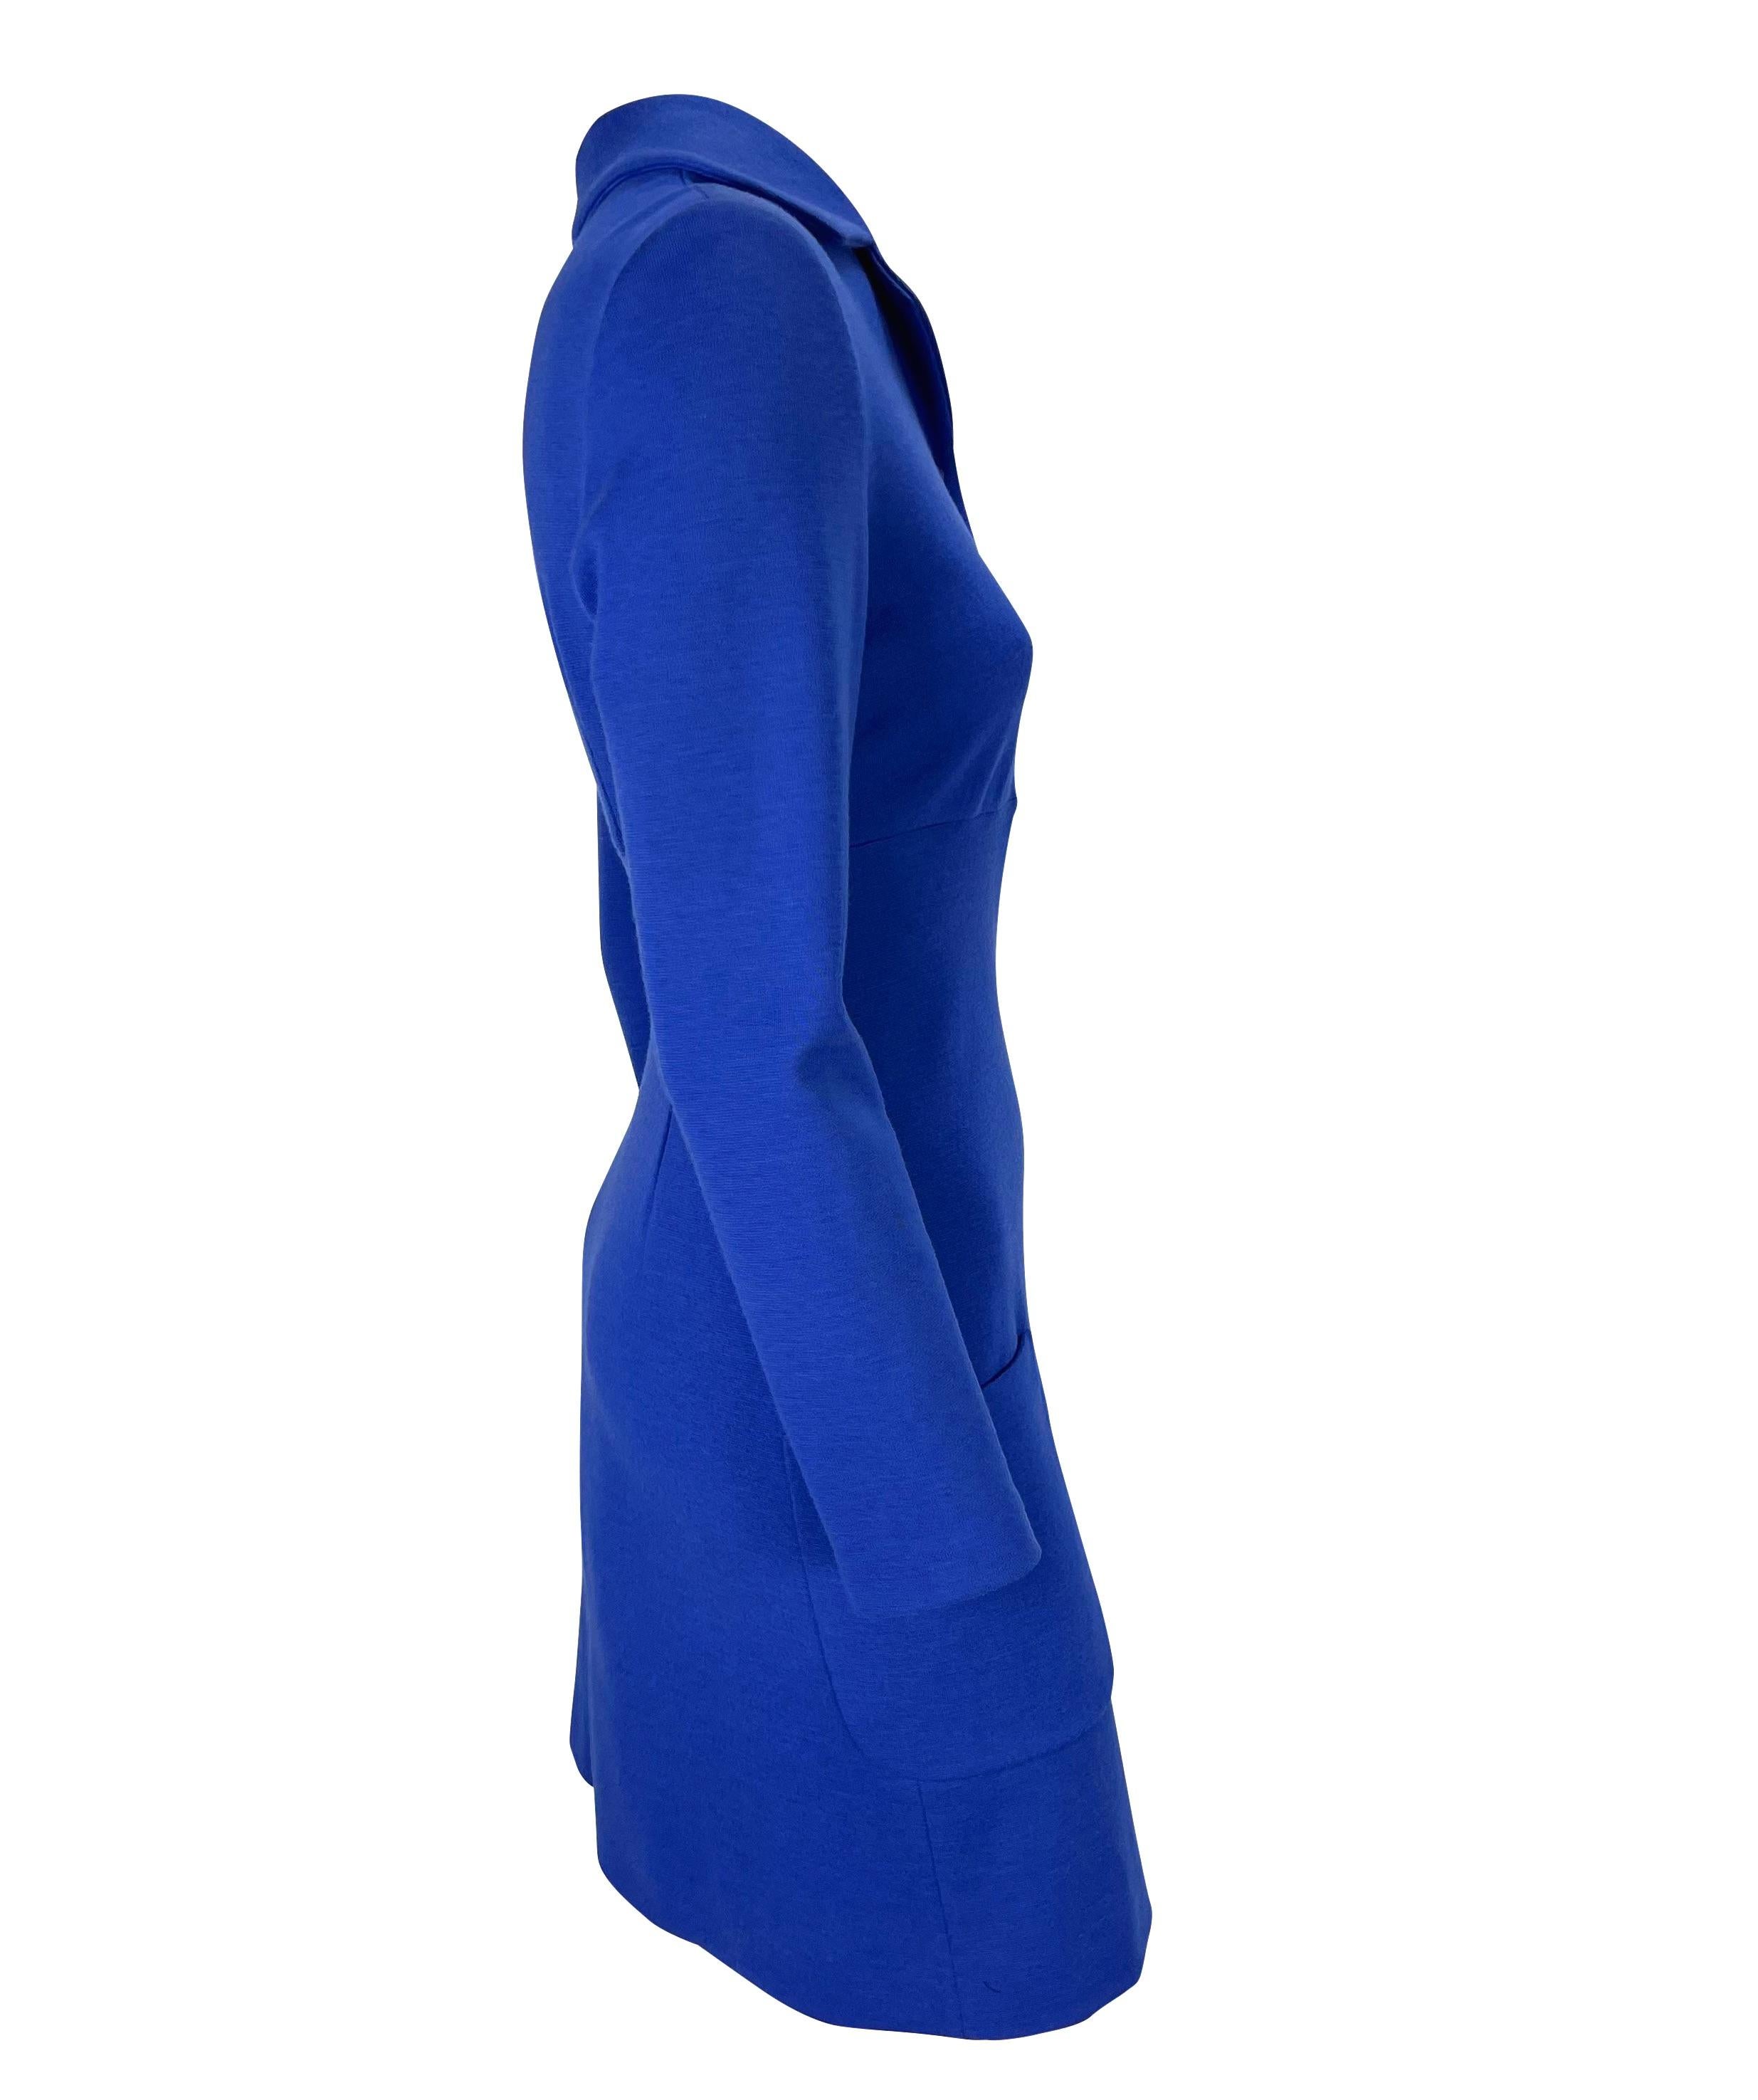 F/W 1996 Gianni Versace Couture - Robe boutonnée Medusa bleu roi  Pour femmes en vente